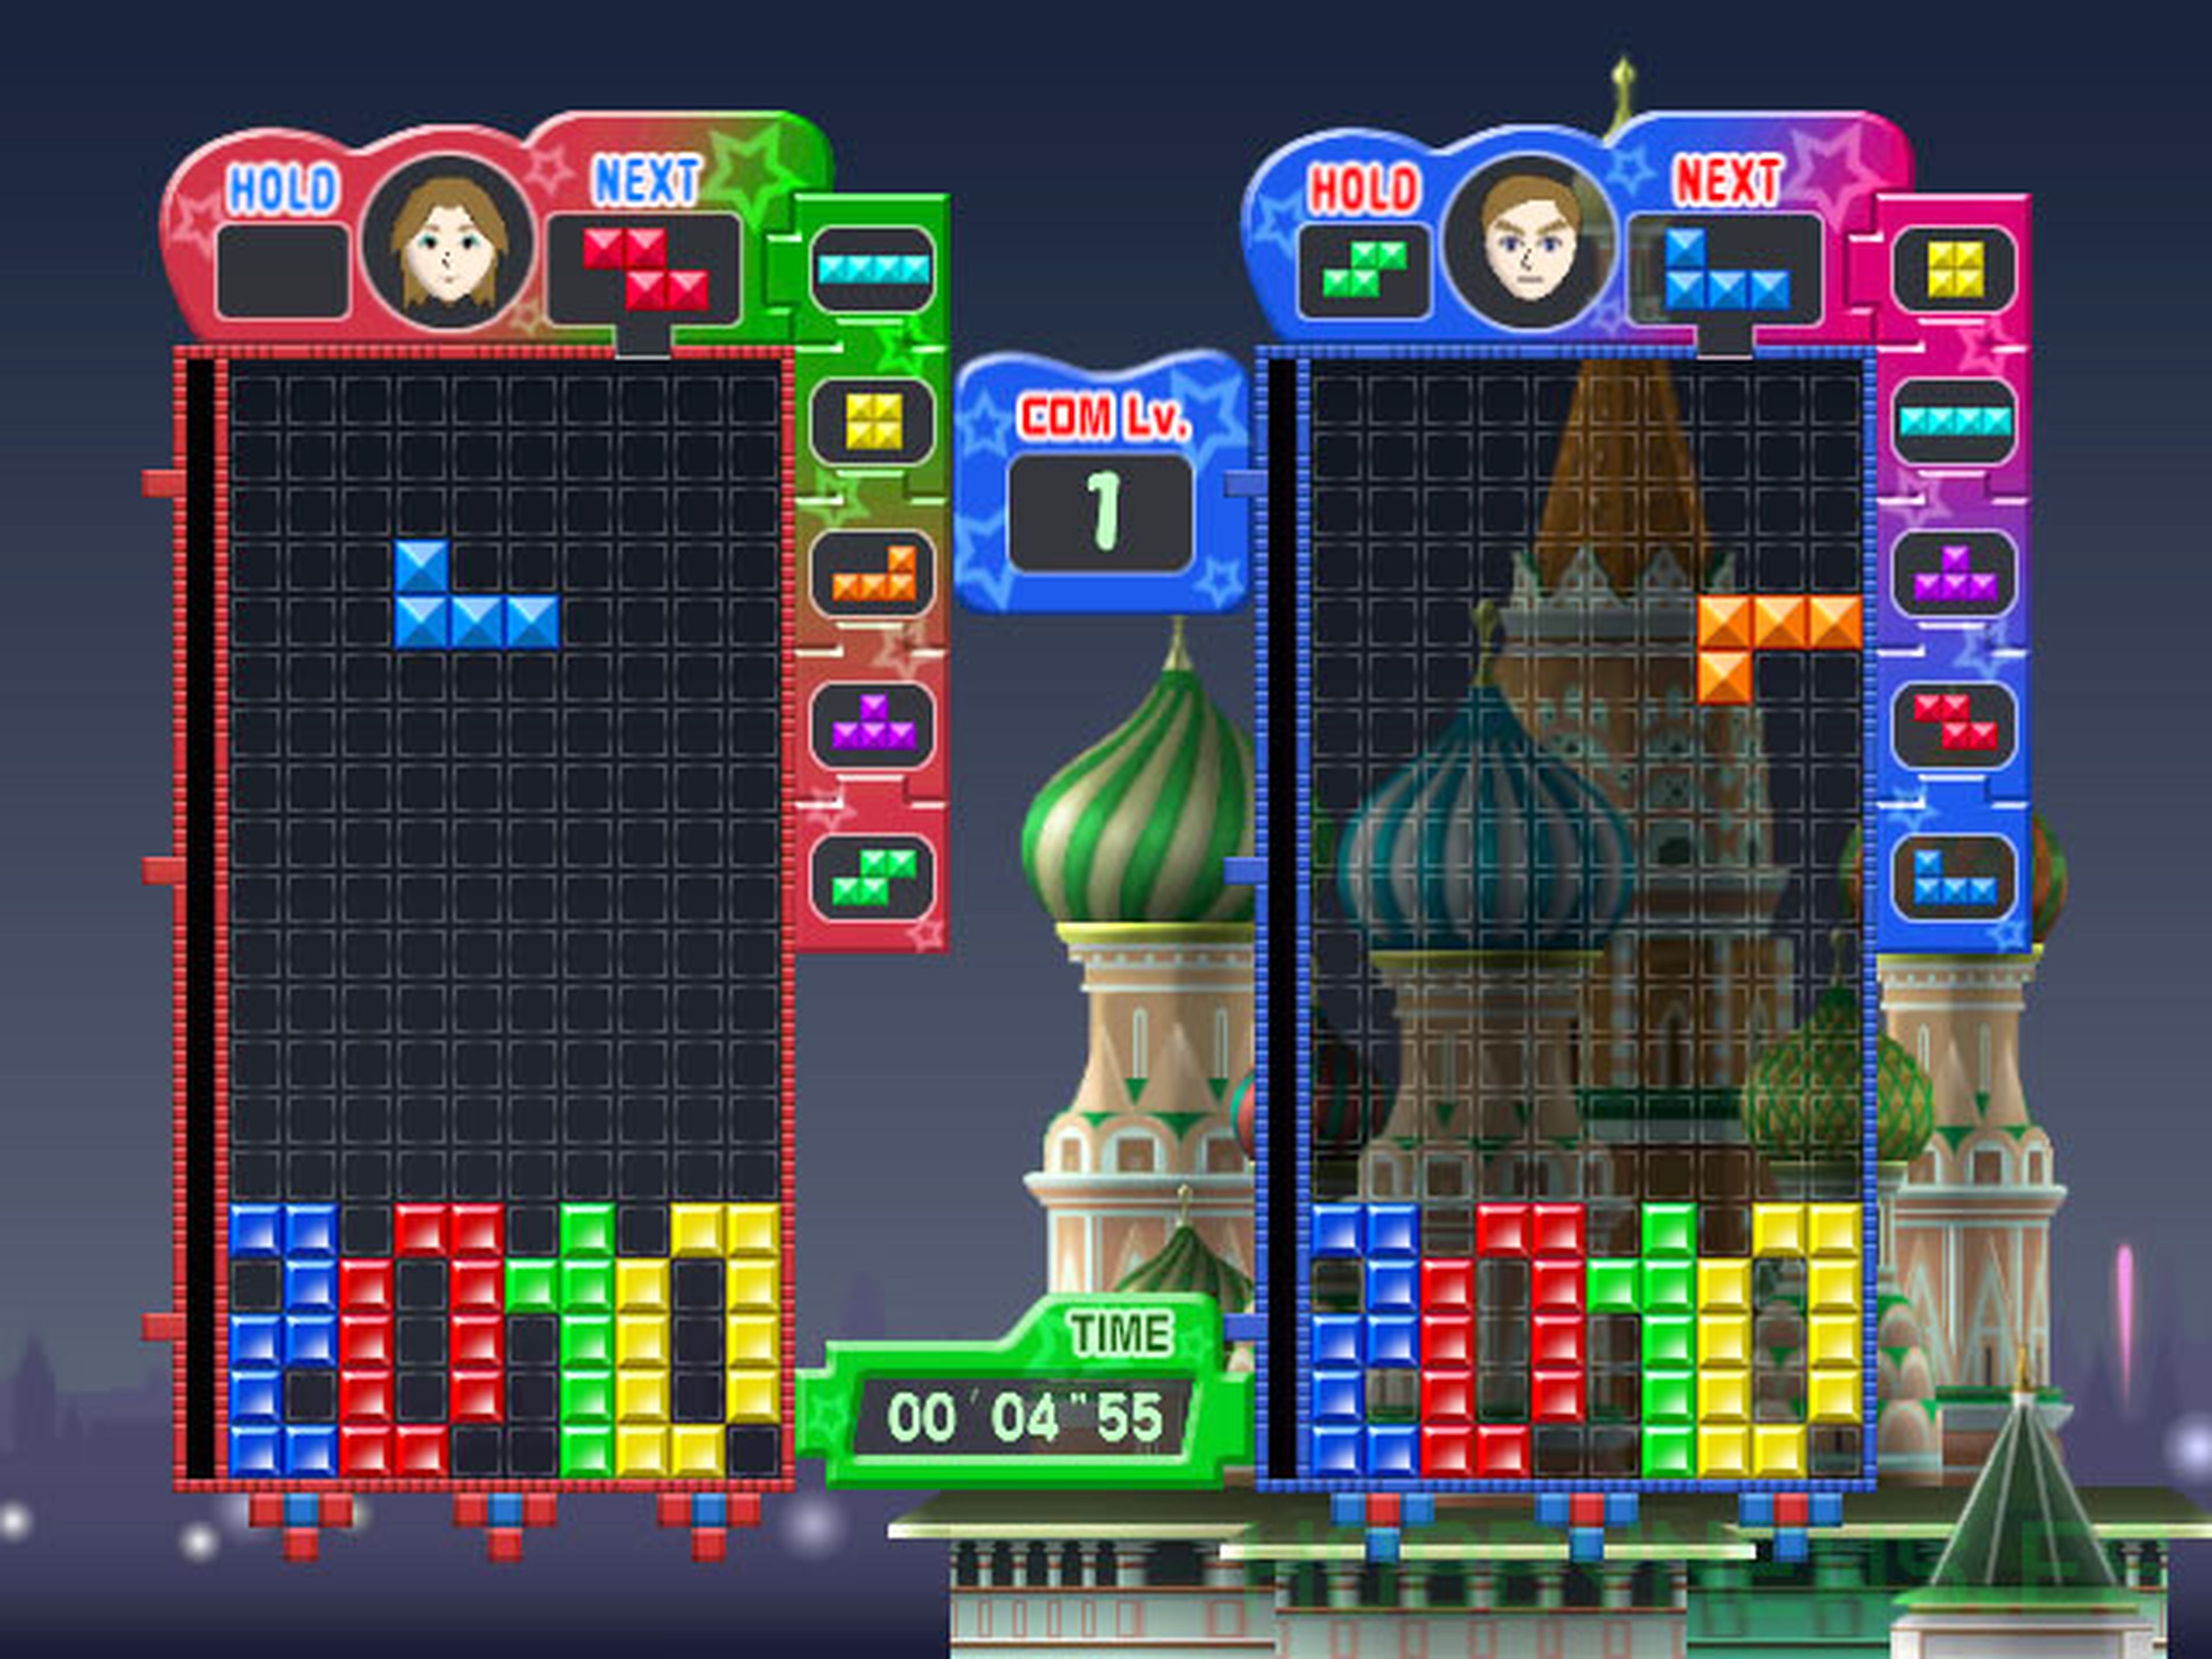 Review con fichas de Tetris Party Deluxe